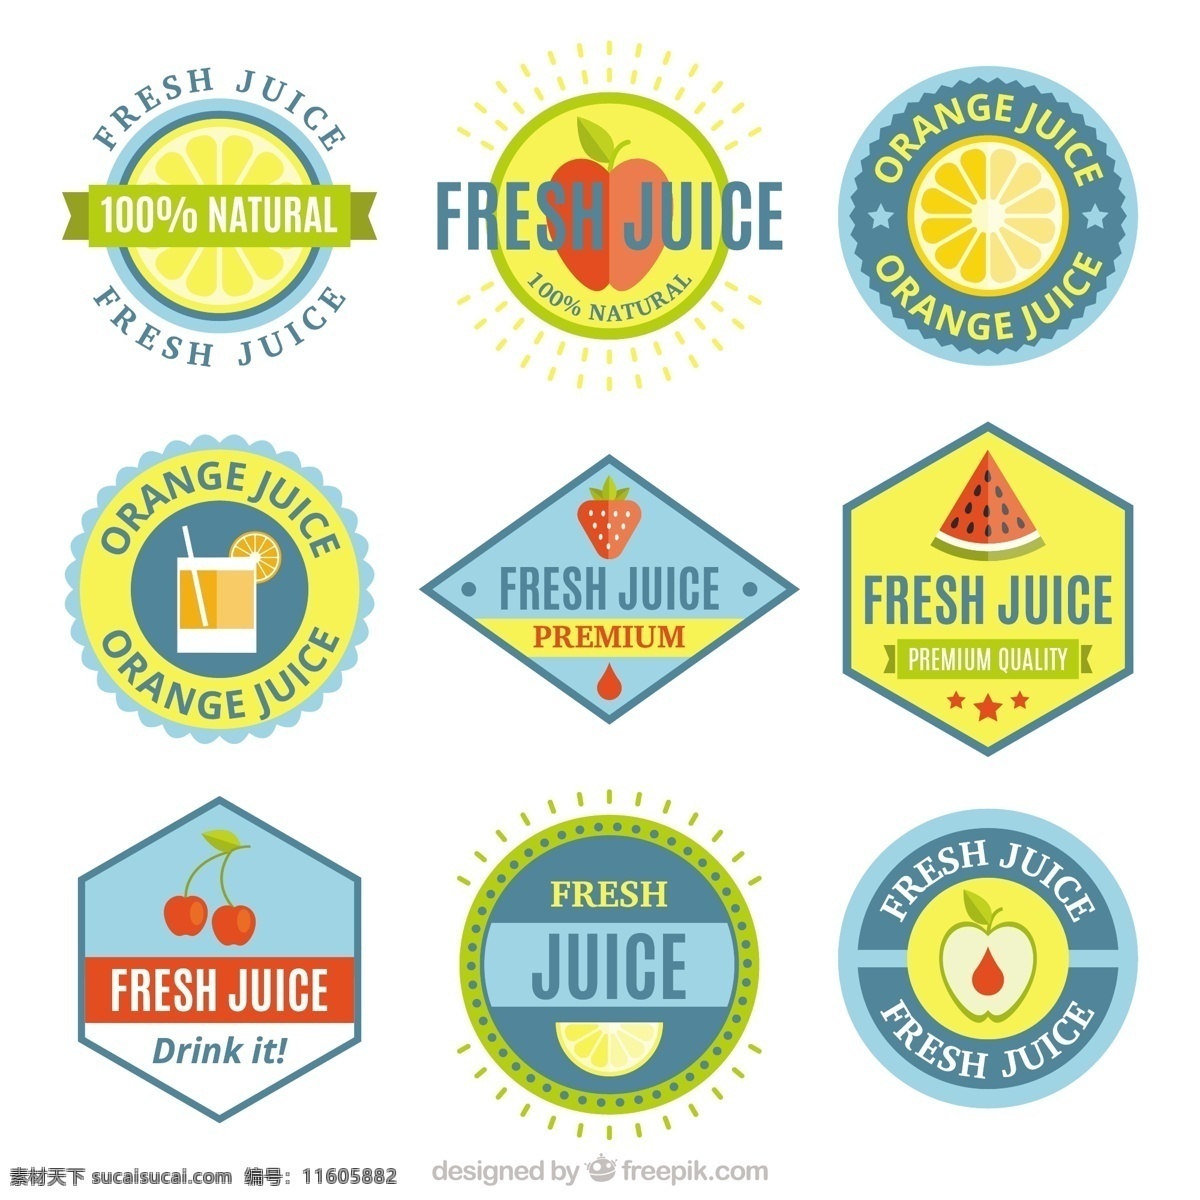 收集 带有 水果 彩色 贴纸 采购产品食品 标签 夏天 颜色 橙色 热带 苹果 平板 饮料 果汁 自然 健康 平面设计 草莓 柠檬